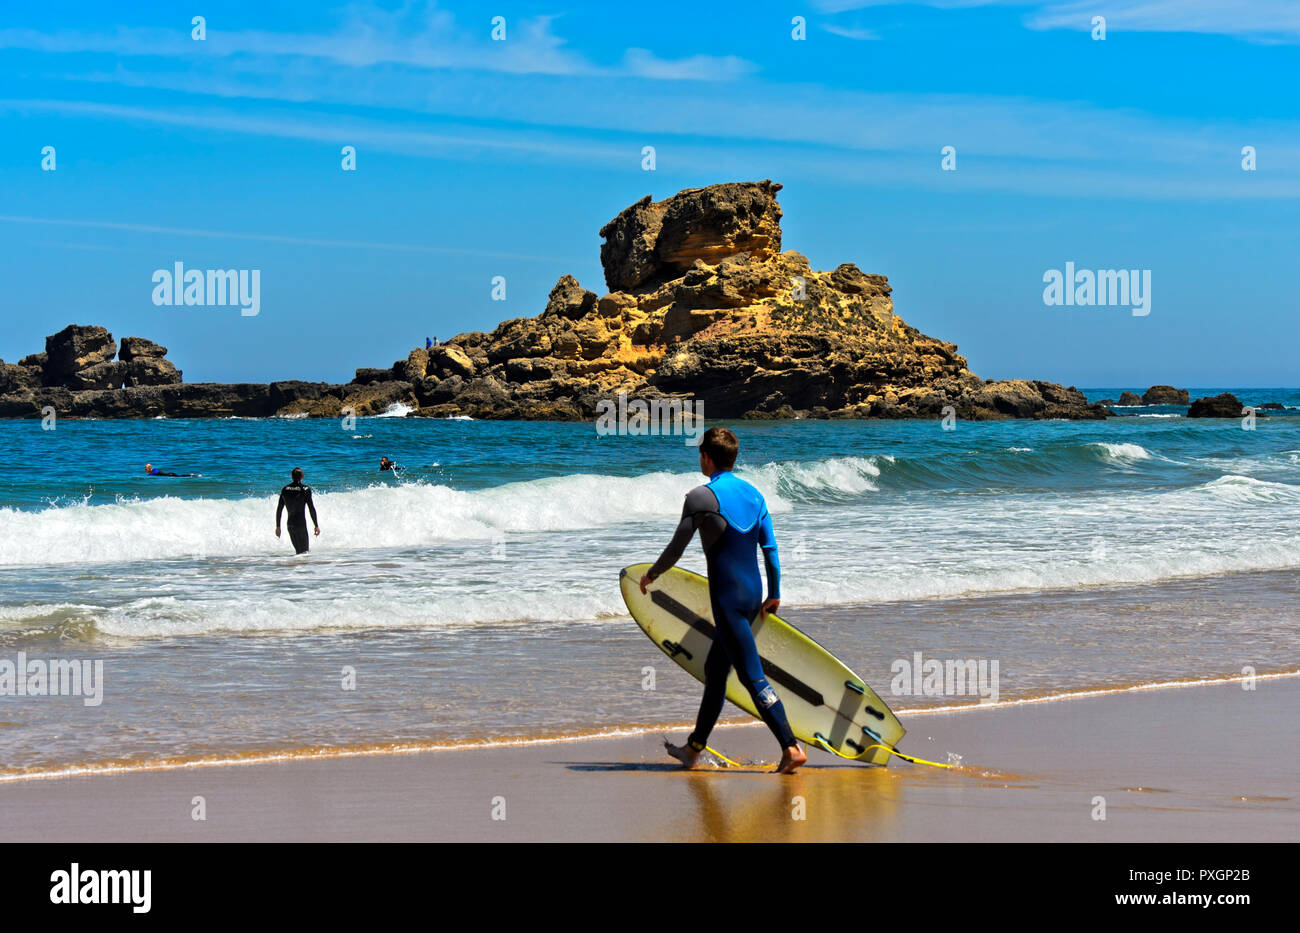 Surfer at the Praia do Castelejo beach at the Costa Vicentina coast, Vila do Bispo, Portugal Stock Photo